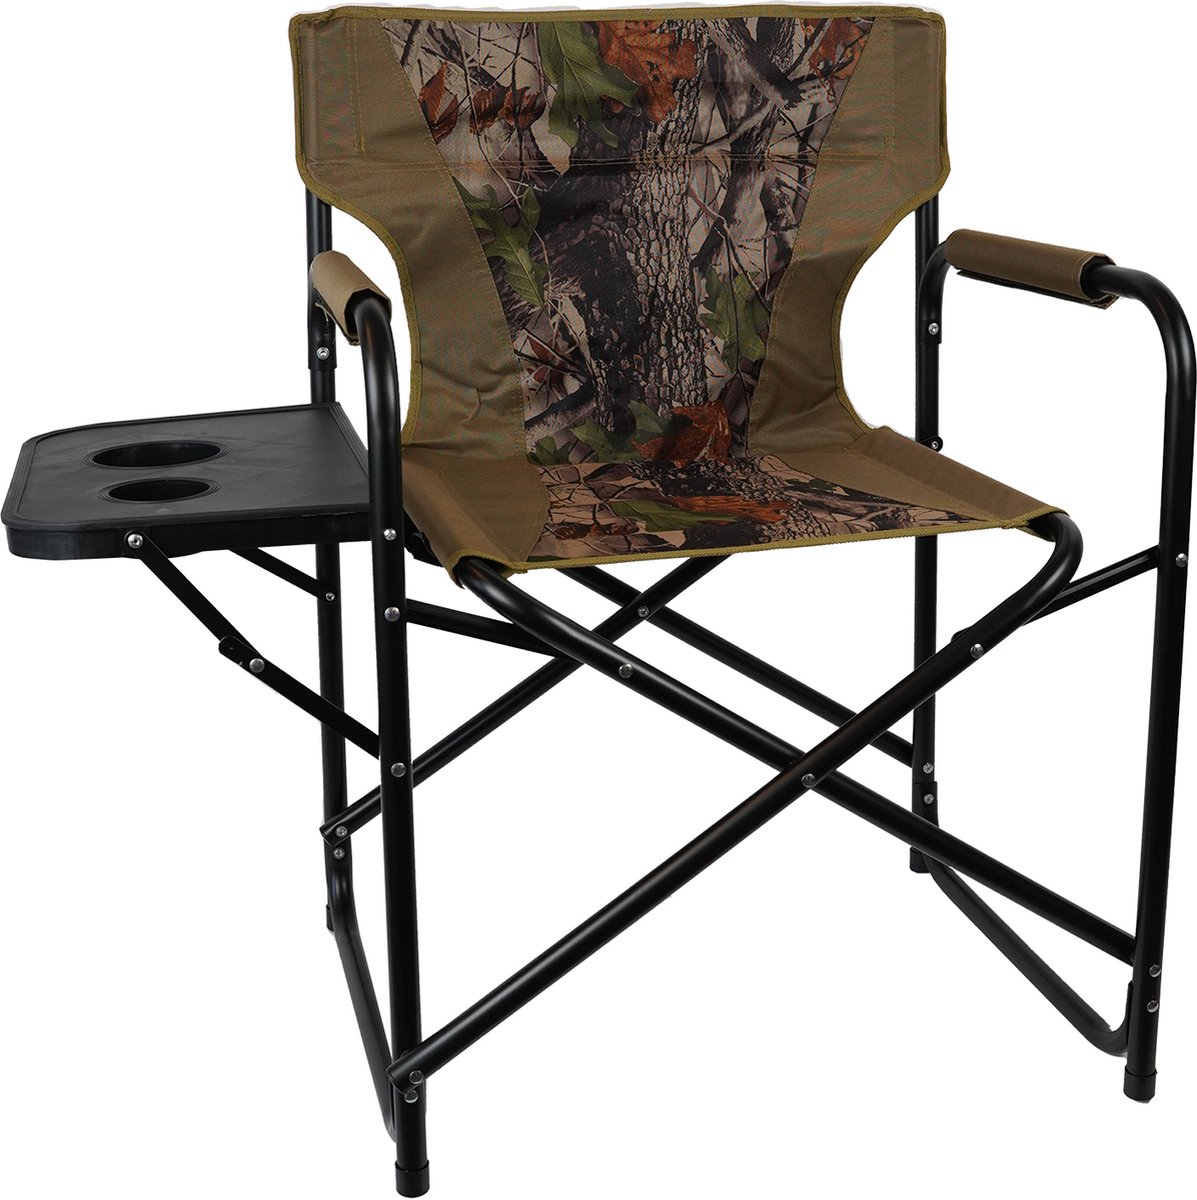 Eurocatch - Opvouwbare Campingstoel Met zijtafel - Camouflage - Director Chair - Visstoel | Afm. 59x48x85cm | Afm. Zijtafel 27x39.5cm